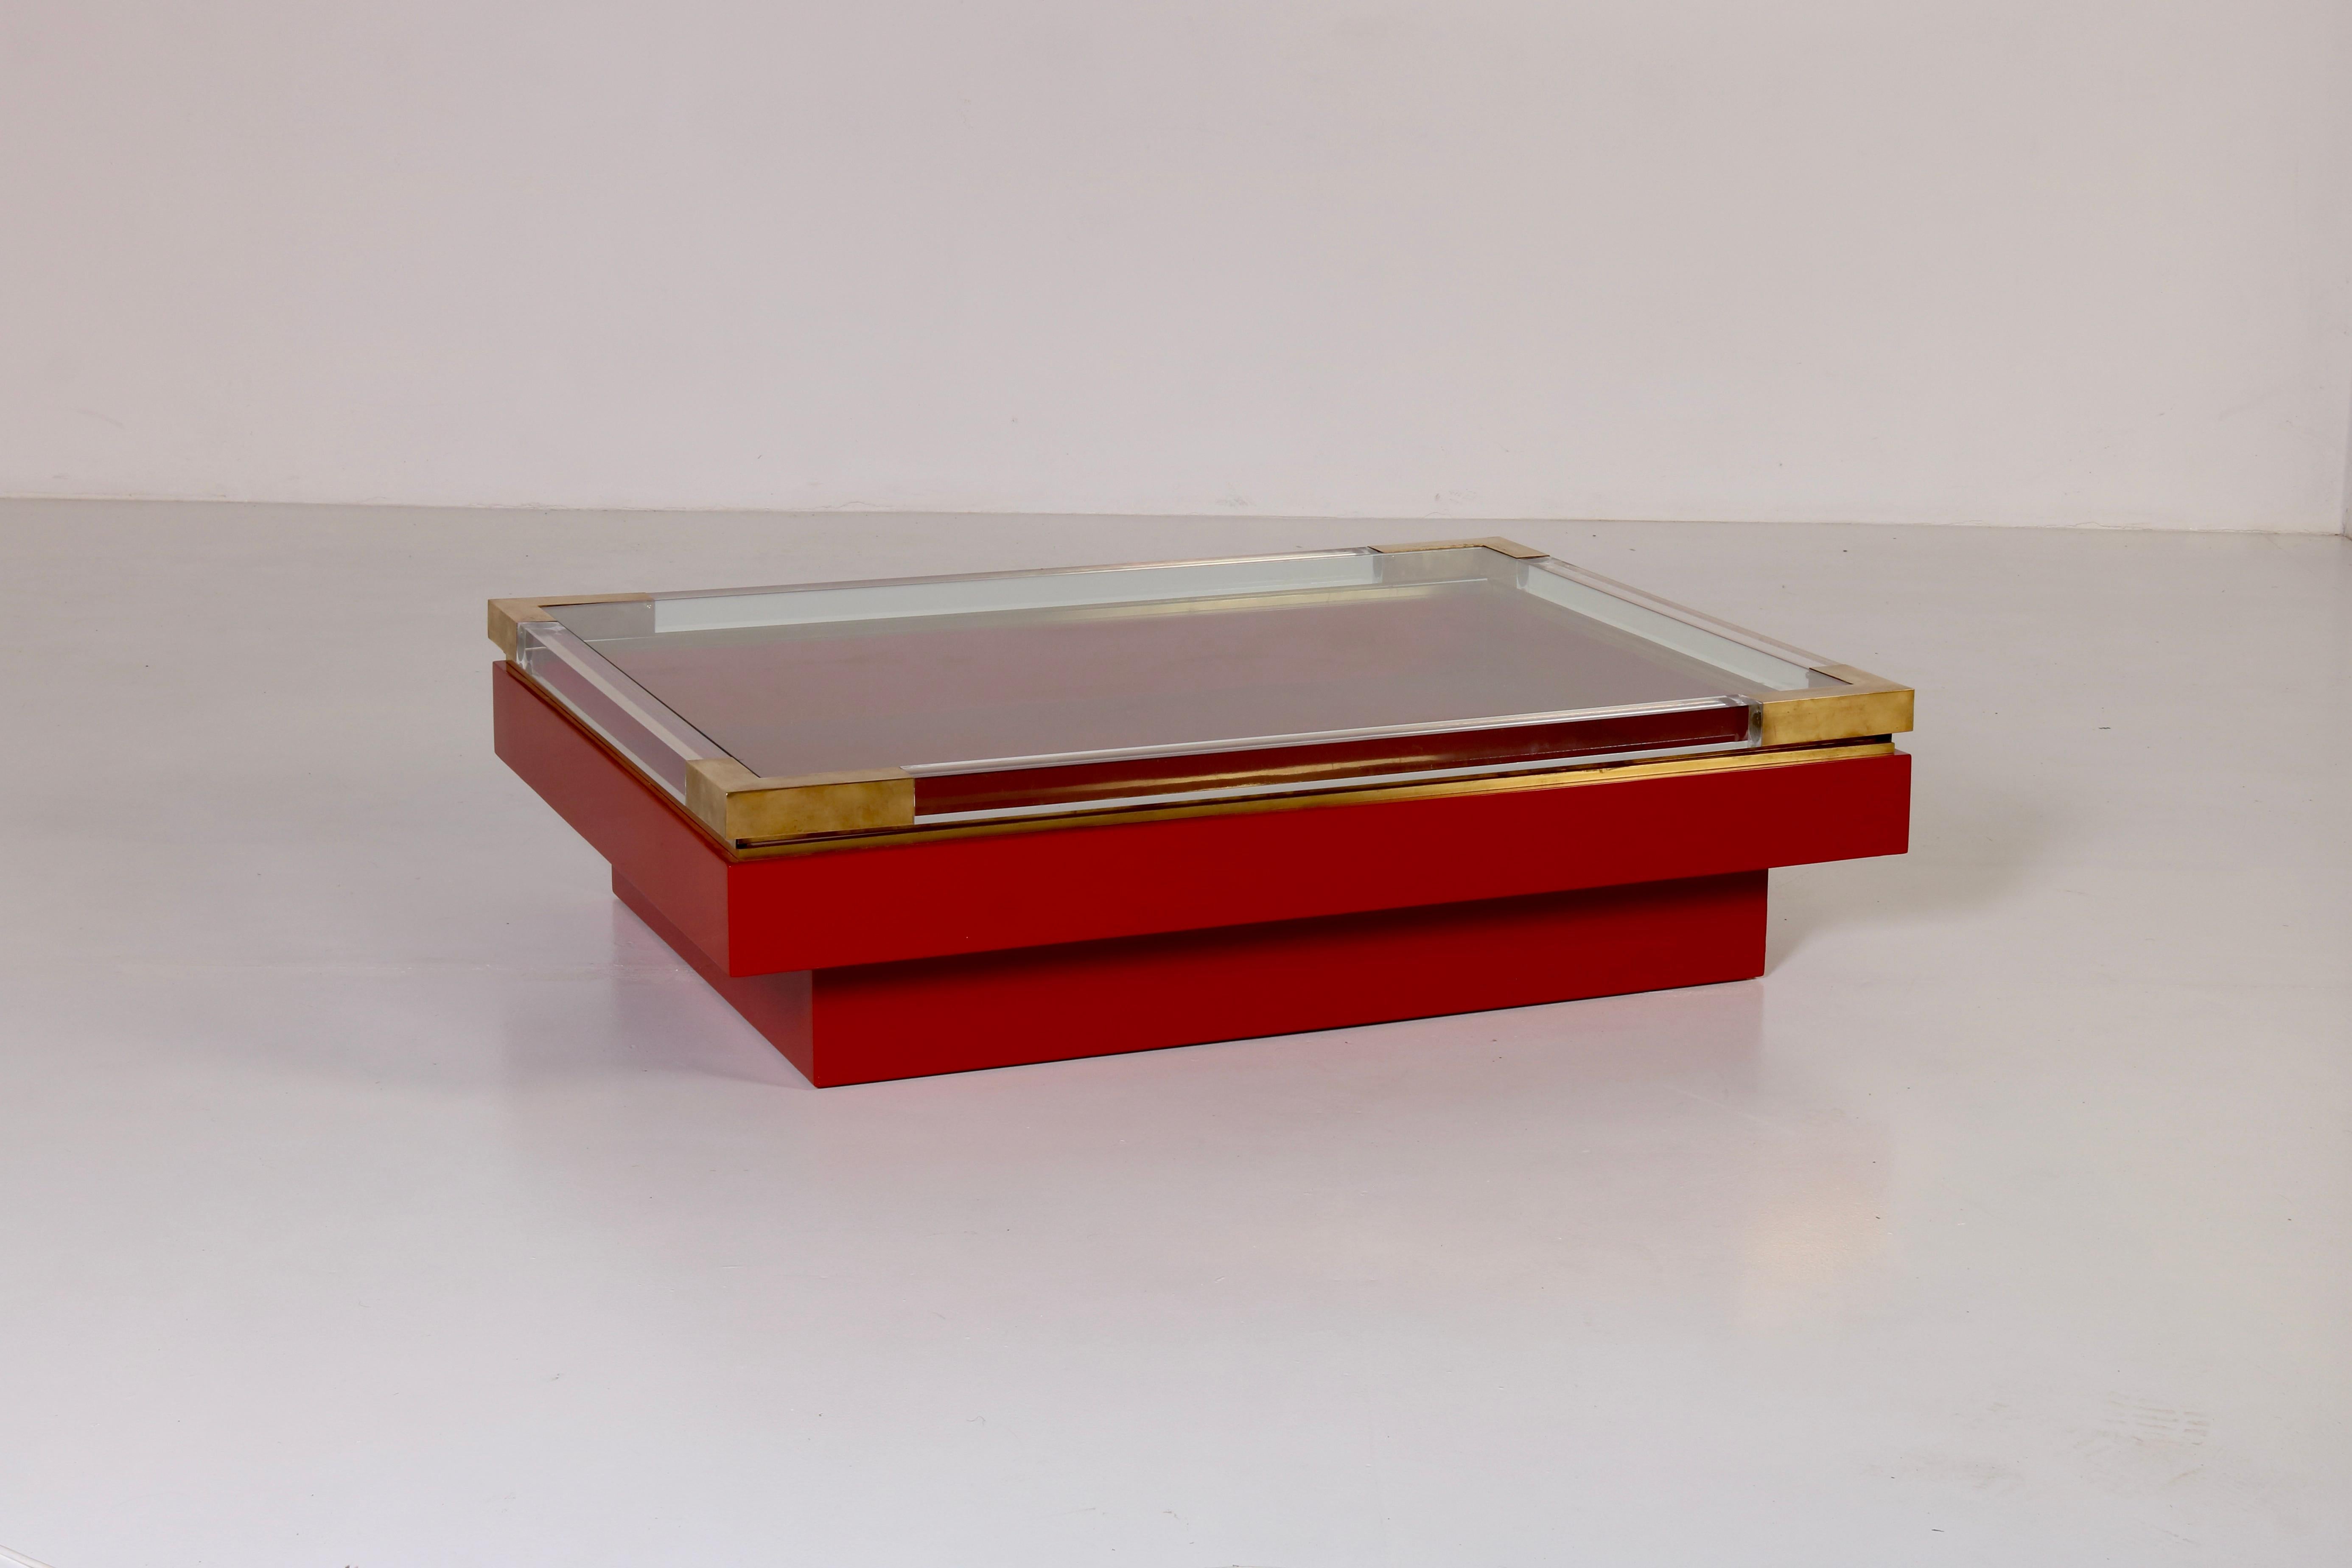 
Dieser atemberaubende niedrige Tisch mit Schiebeplatte in Rot und Gold von Romeo Rega ist ein unvergessliches Meisterwerk. Die Gegenüberstellung von satten Farben und metallischen Akzenten mit der Transparenz des Plexiglasrahmens und der Glasplatte